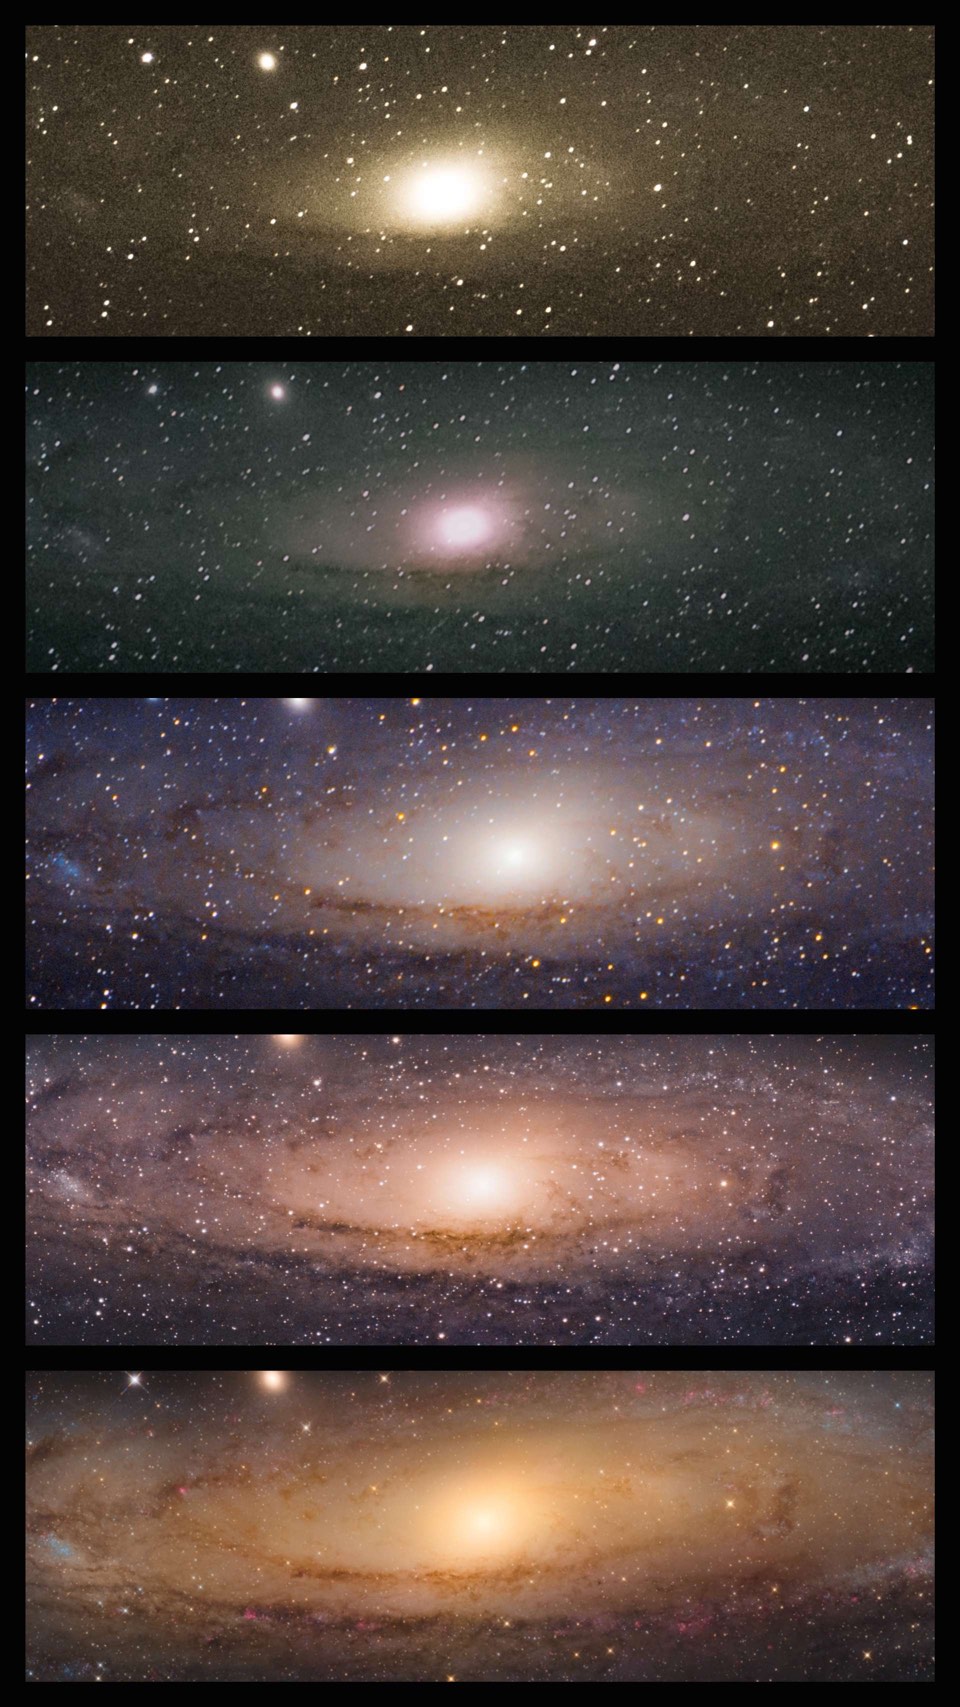 La galassia di Andromeda M31, fotografata da Sophie Paulin. 2 volte senza inseguimento con un teleobiettivo da 200 mm, 1 volta con montatura fotografica e teleobiettivo da 200 mm con teleconverter, 1 volta con montatura fotografica e teleobiettivo da 600 mm, 1 volta con un telescopio Newton 8" f/4,5